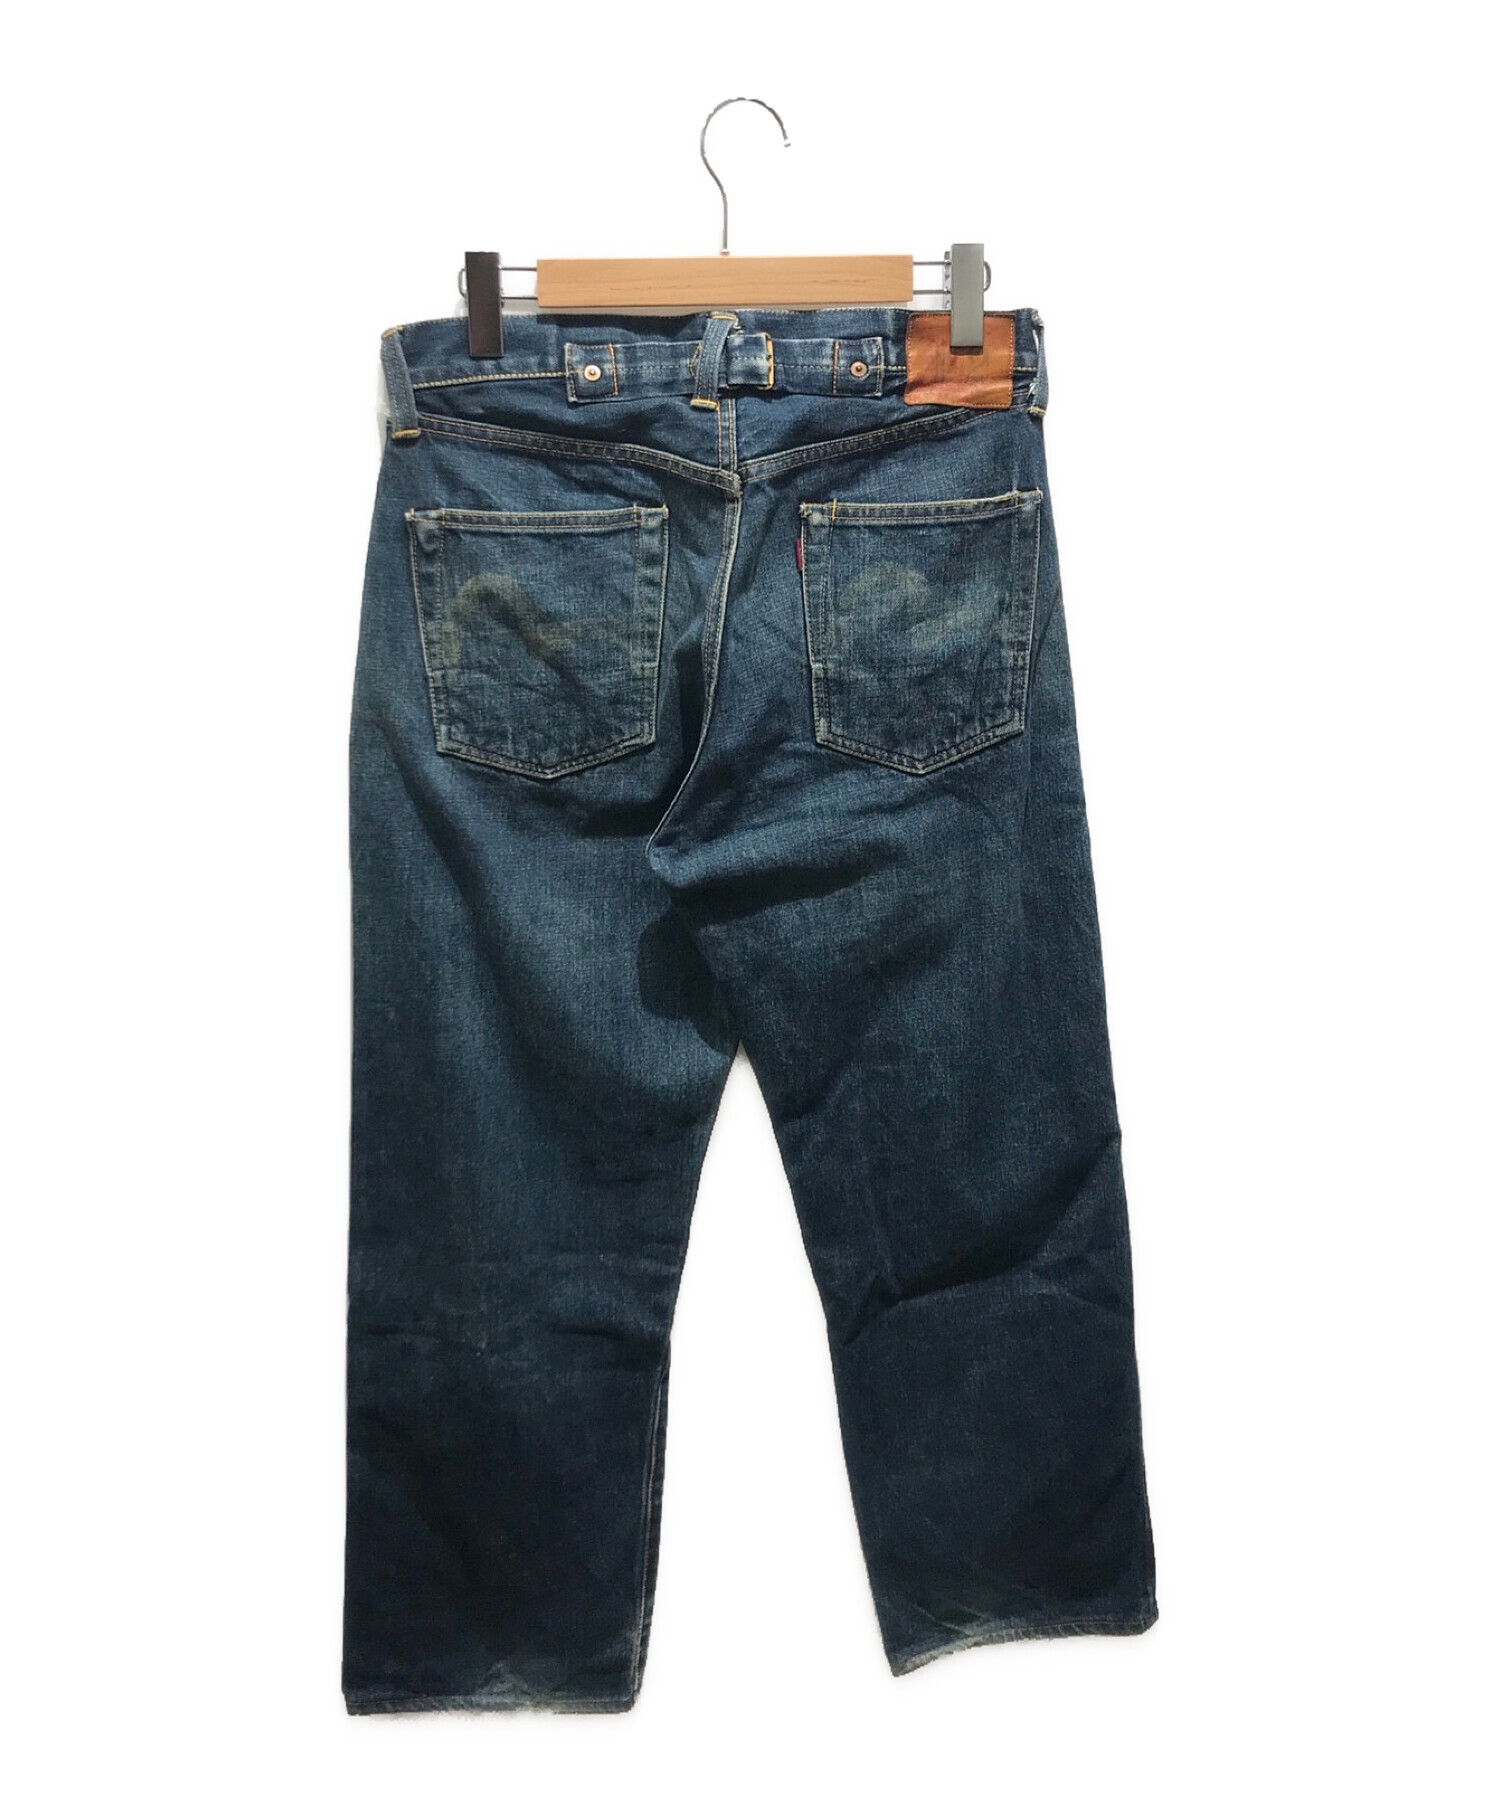 中古・古着通販】Evisu Jeans (エヴィスジーンズ) デニムパンツ 2504